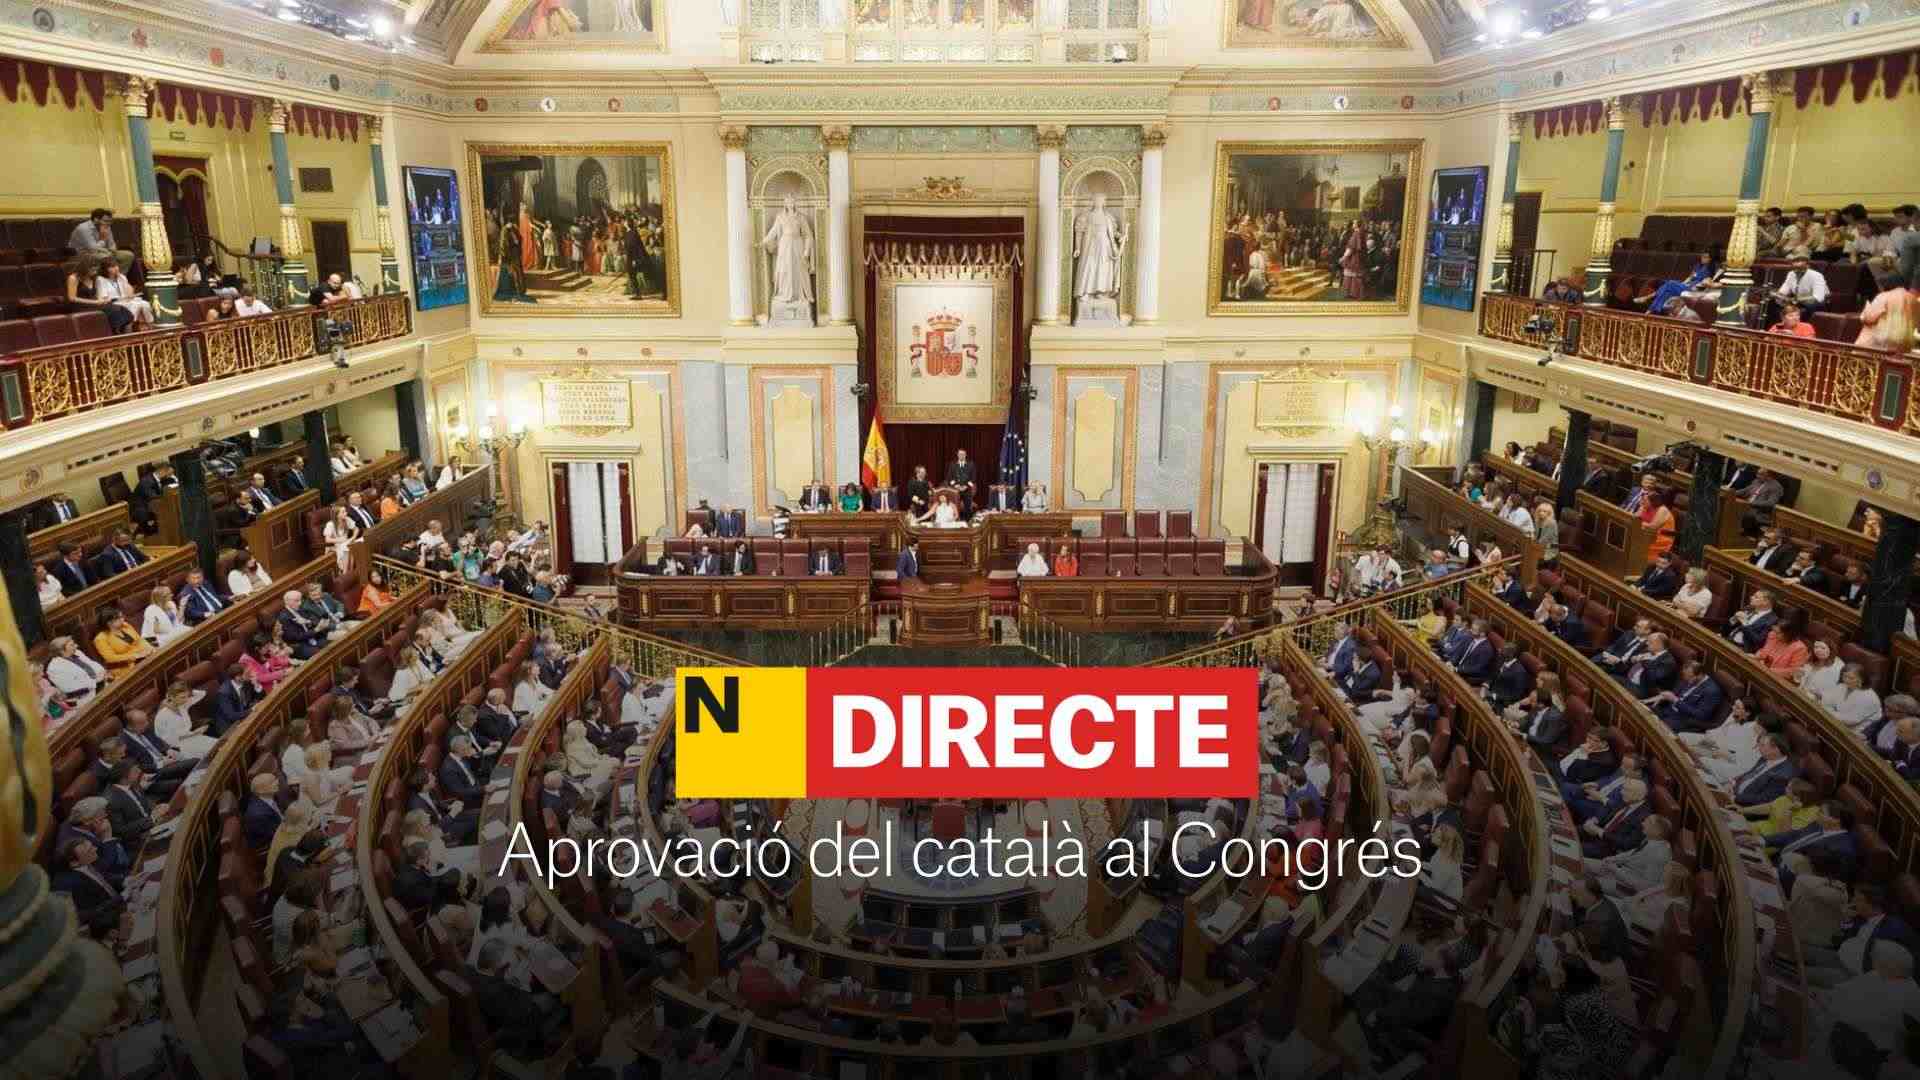 Aprobación definitiva del catalán en el Congreso, DIRECTO